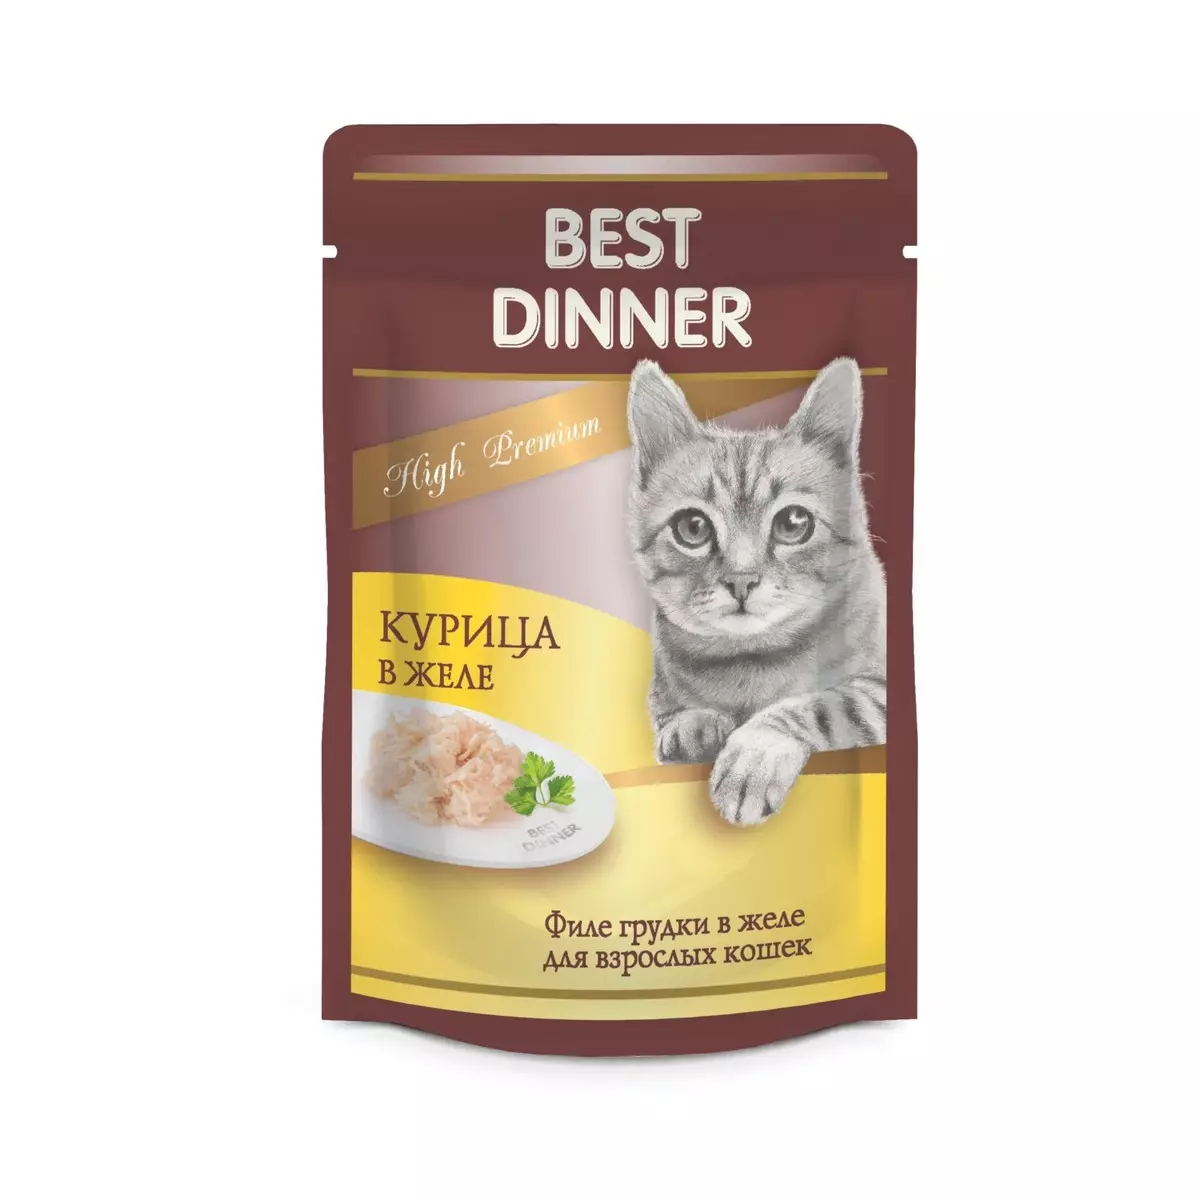 Ushqimi i maces darkë më të mirë: ushqimi i thatë dhe i lagësht nga prodhuesi për kittens dhe macet e rritur, shqyrtim shqyrtime 22735_8